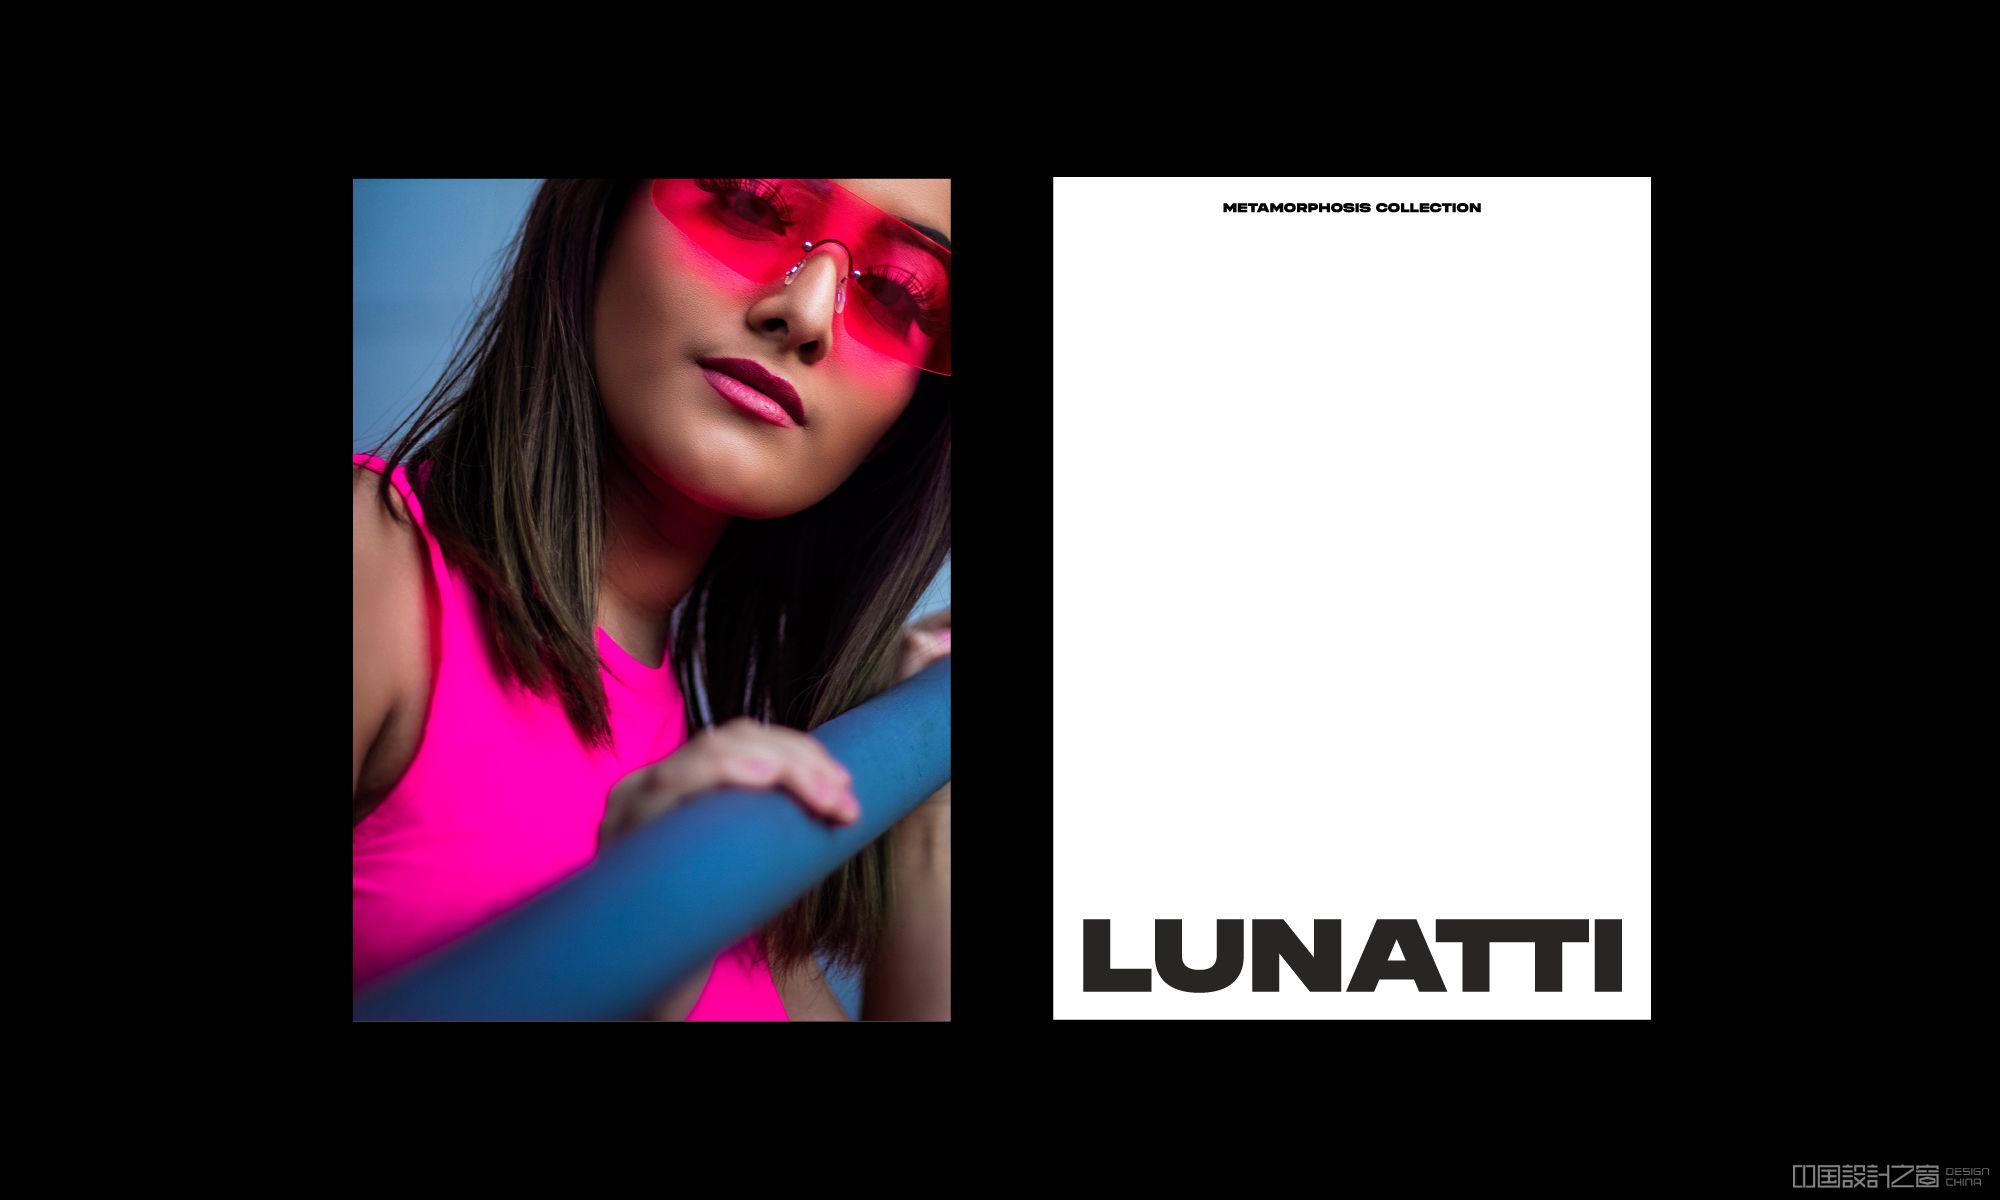 Lunatti brochure cover